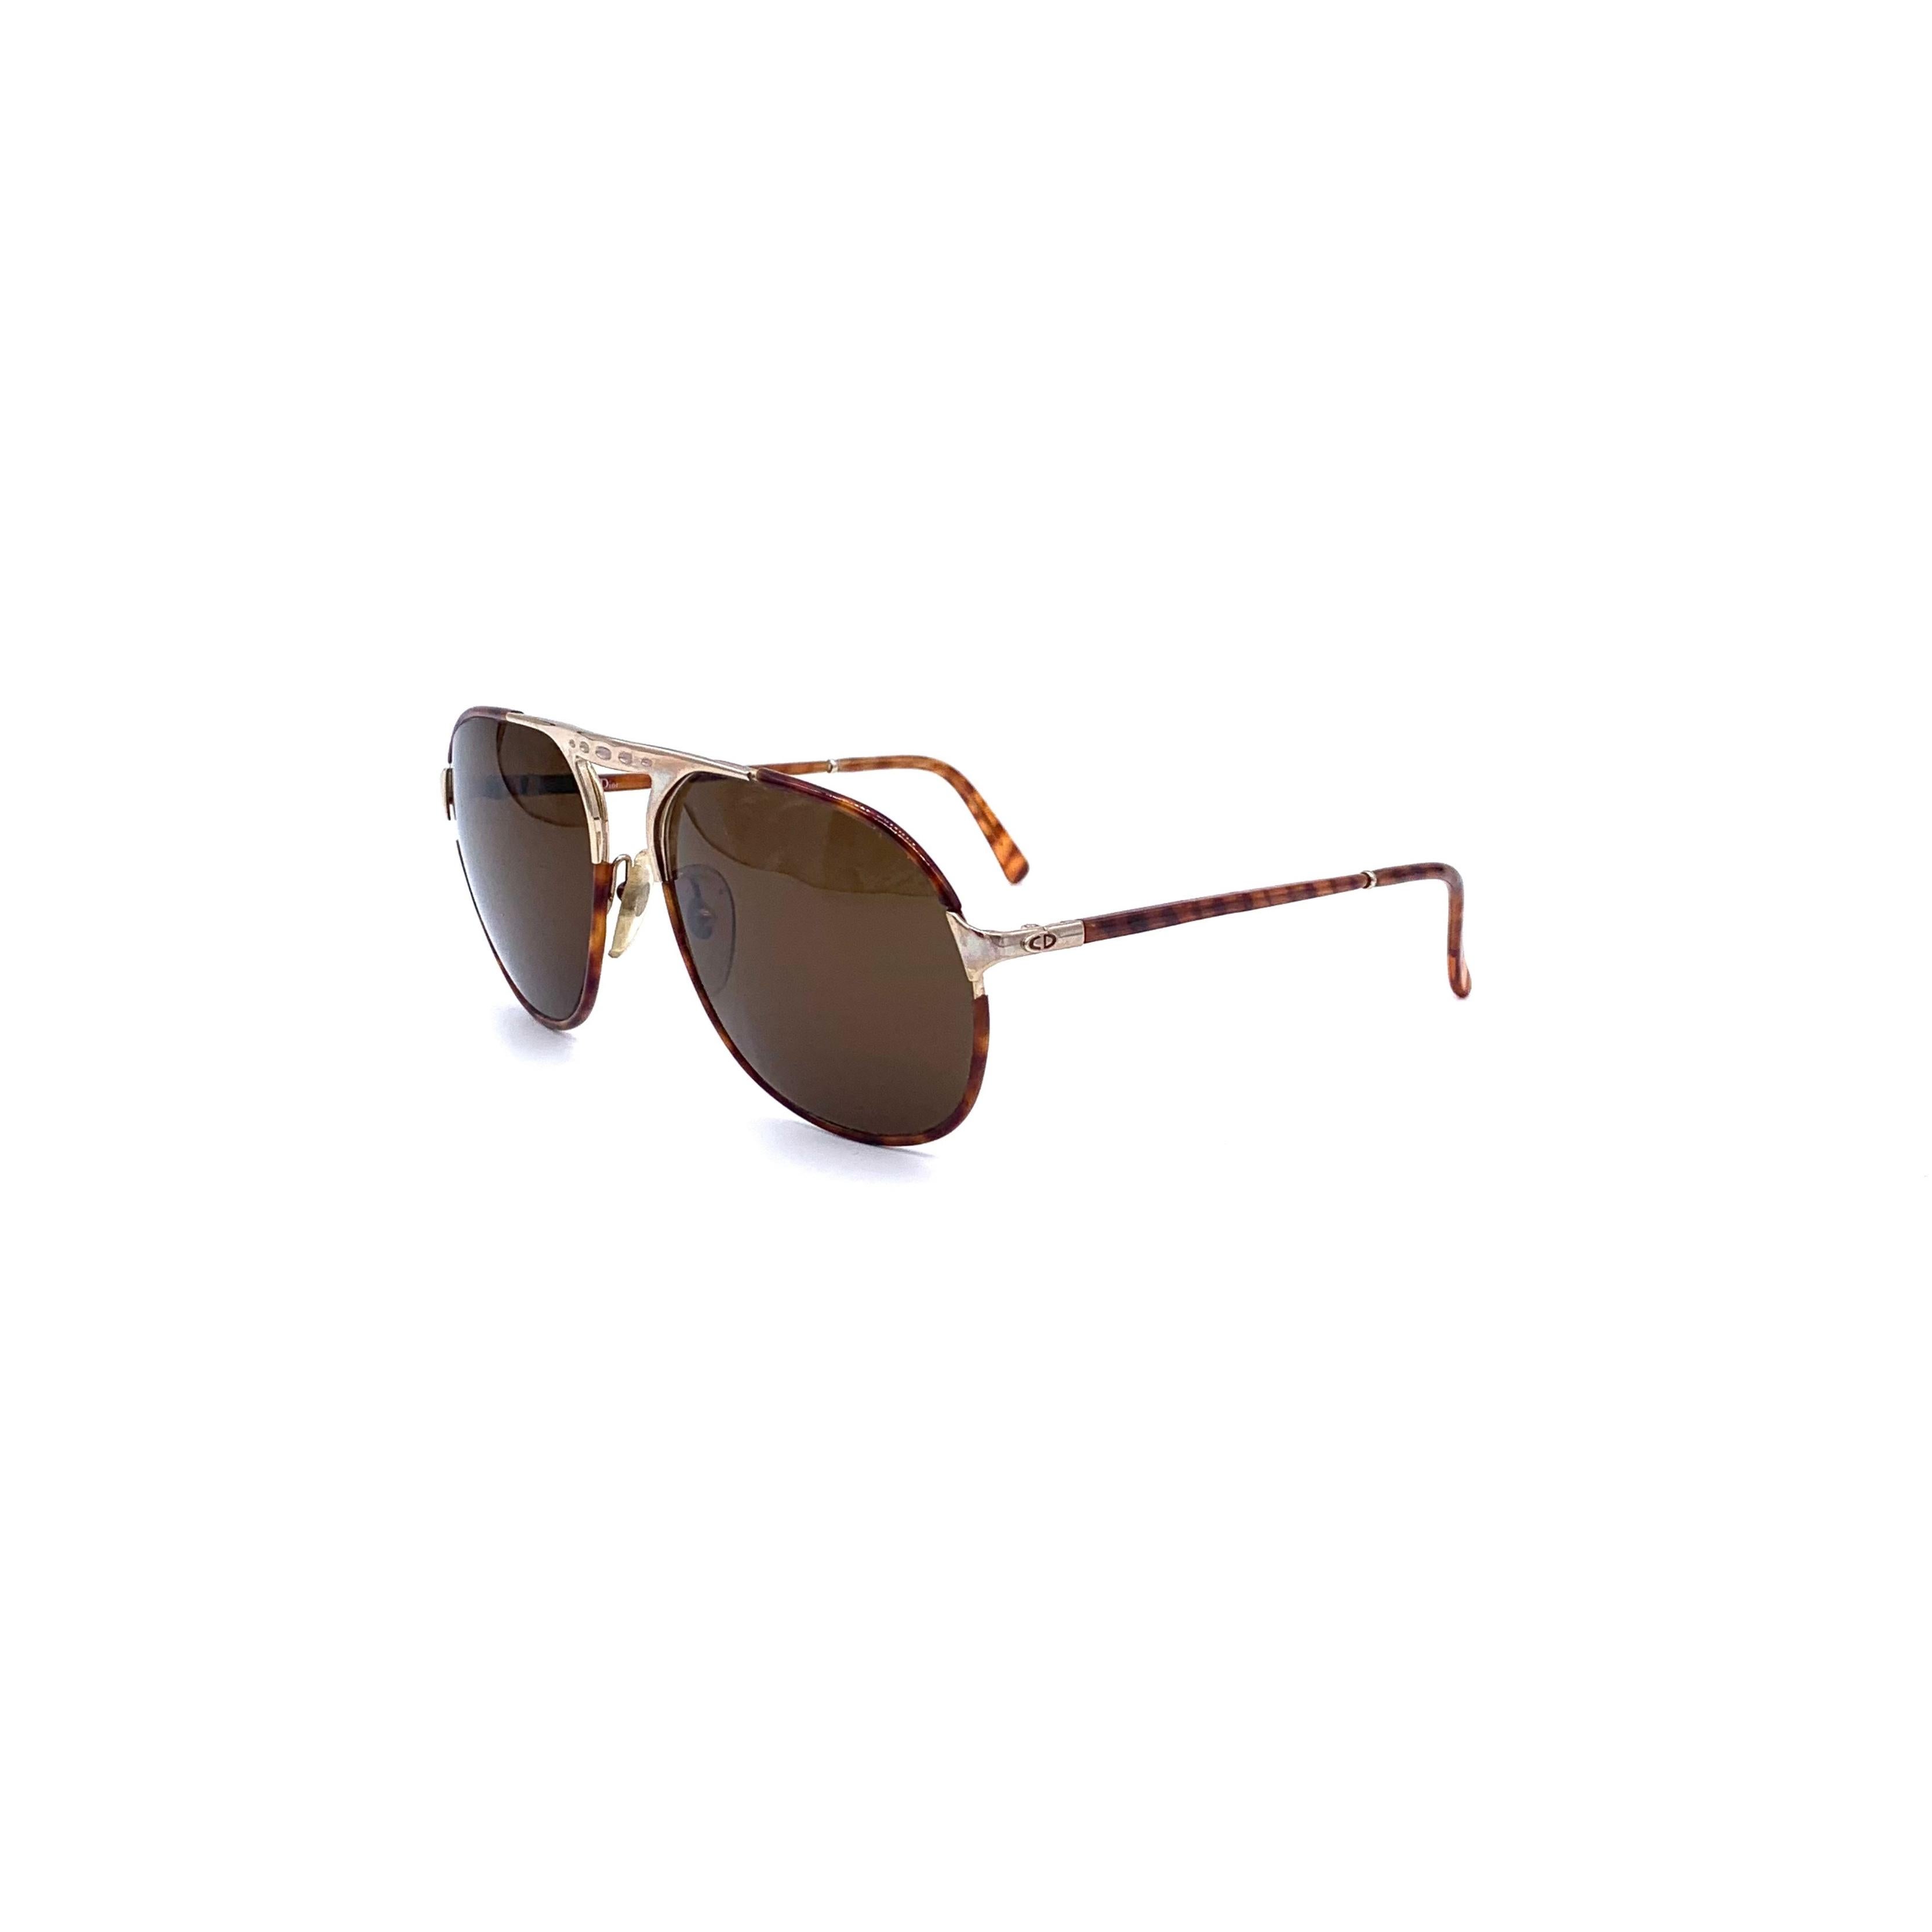 Erleben Sie den Retro-Stil der Aviator-Sonnenbrille von Dior. Mit ihrer klassischen Pilotenbrillen-Silhouette mit braunen Gläsern, einem Acetat-Rahmen in Schildpatt-Optik und einem goldenen Metallsteg ist diese Sonnenbrille ideal für einen